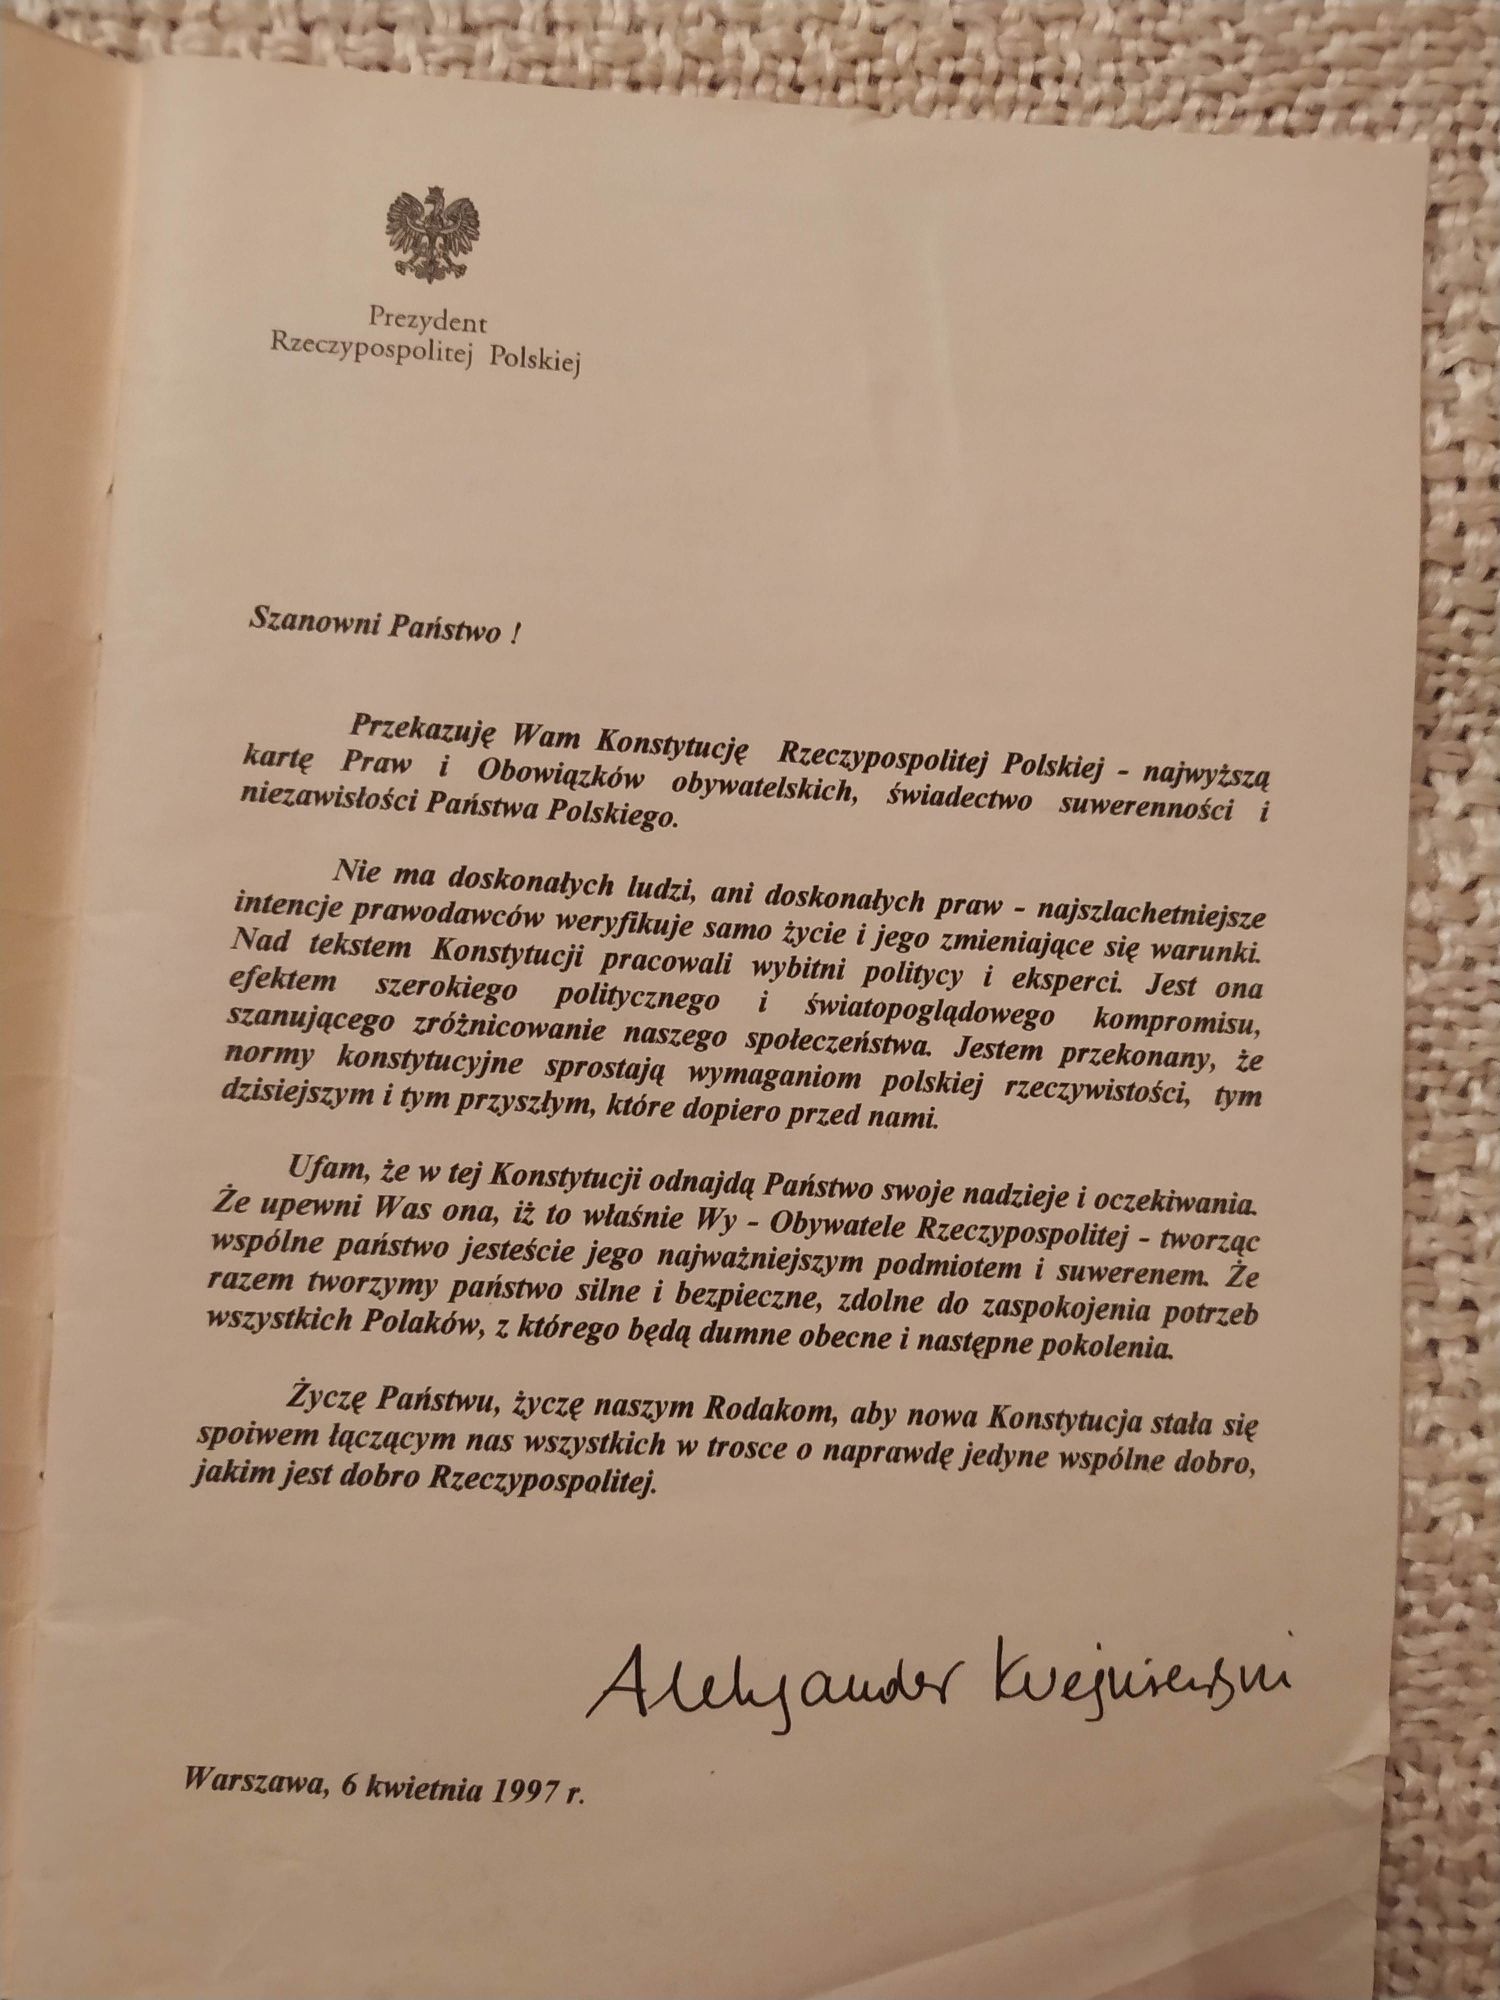 Konstytucja Rzeczypospolitej Polskiej z 1997 roku